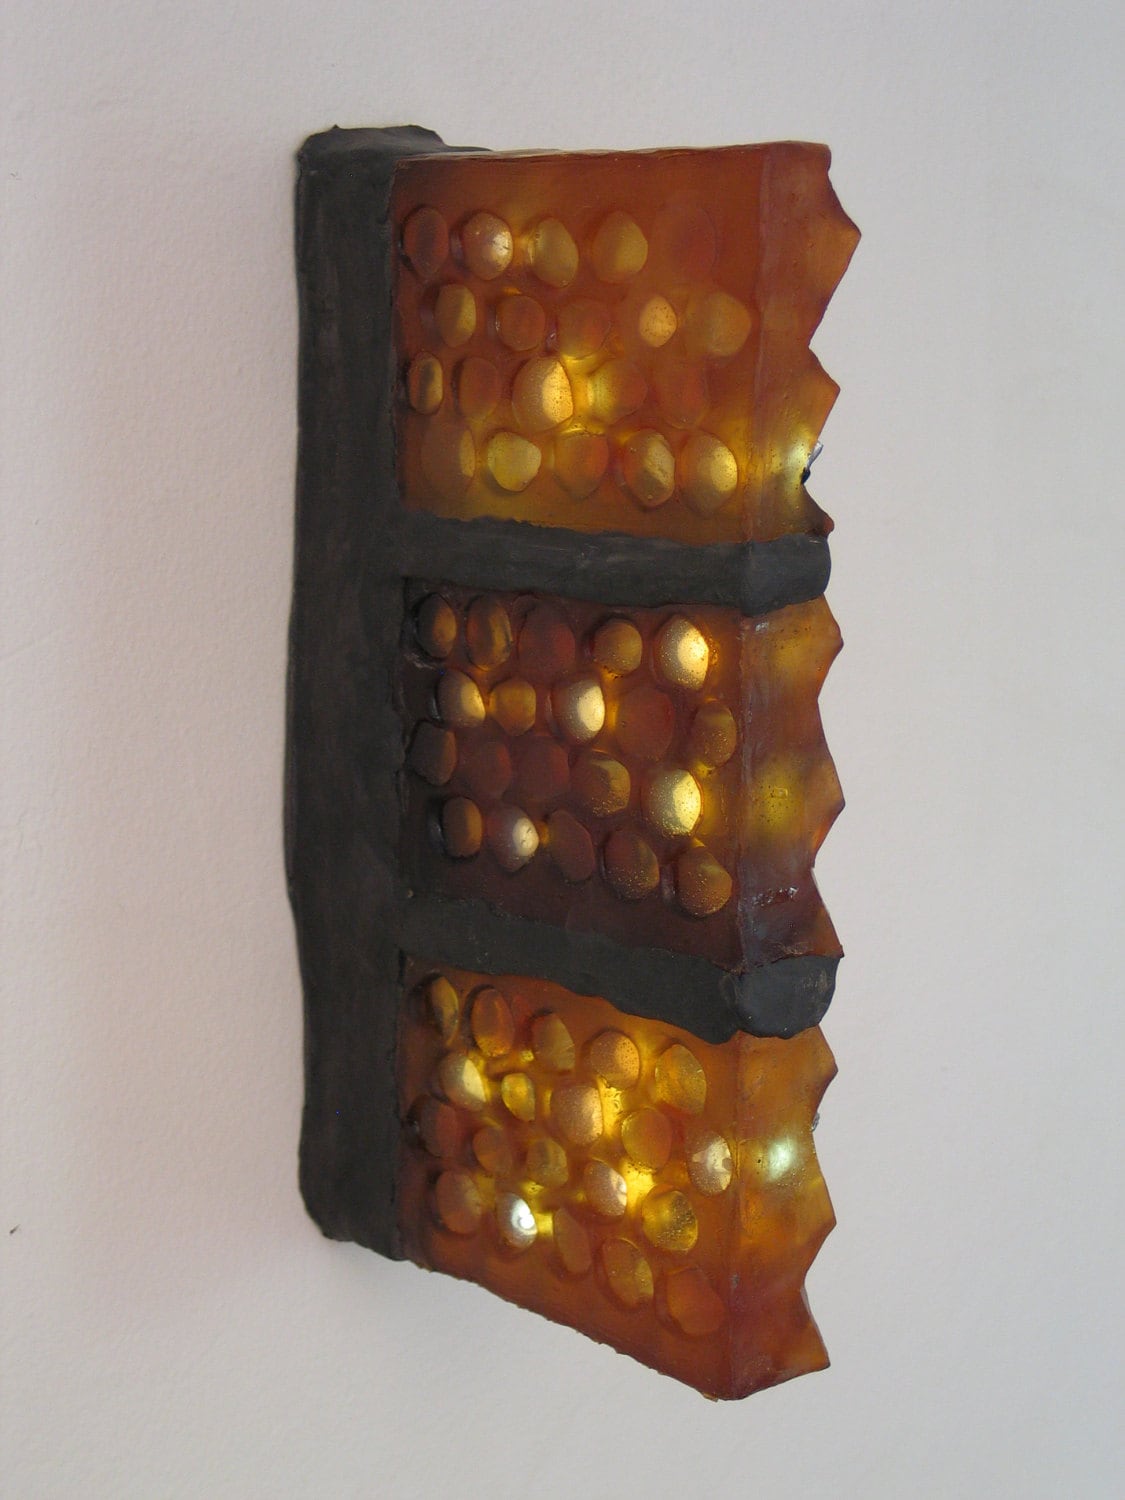 Translucent amber honeycomb with embedded LEDs .  Apis habilis:  Honeycomb Number 9